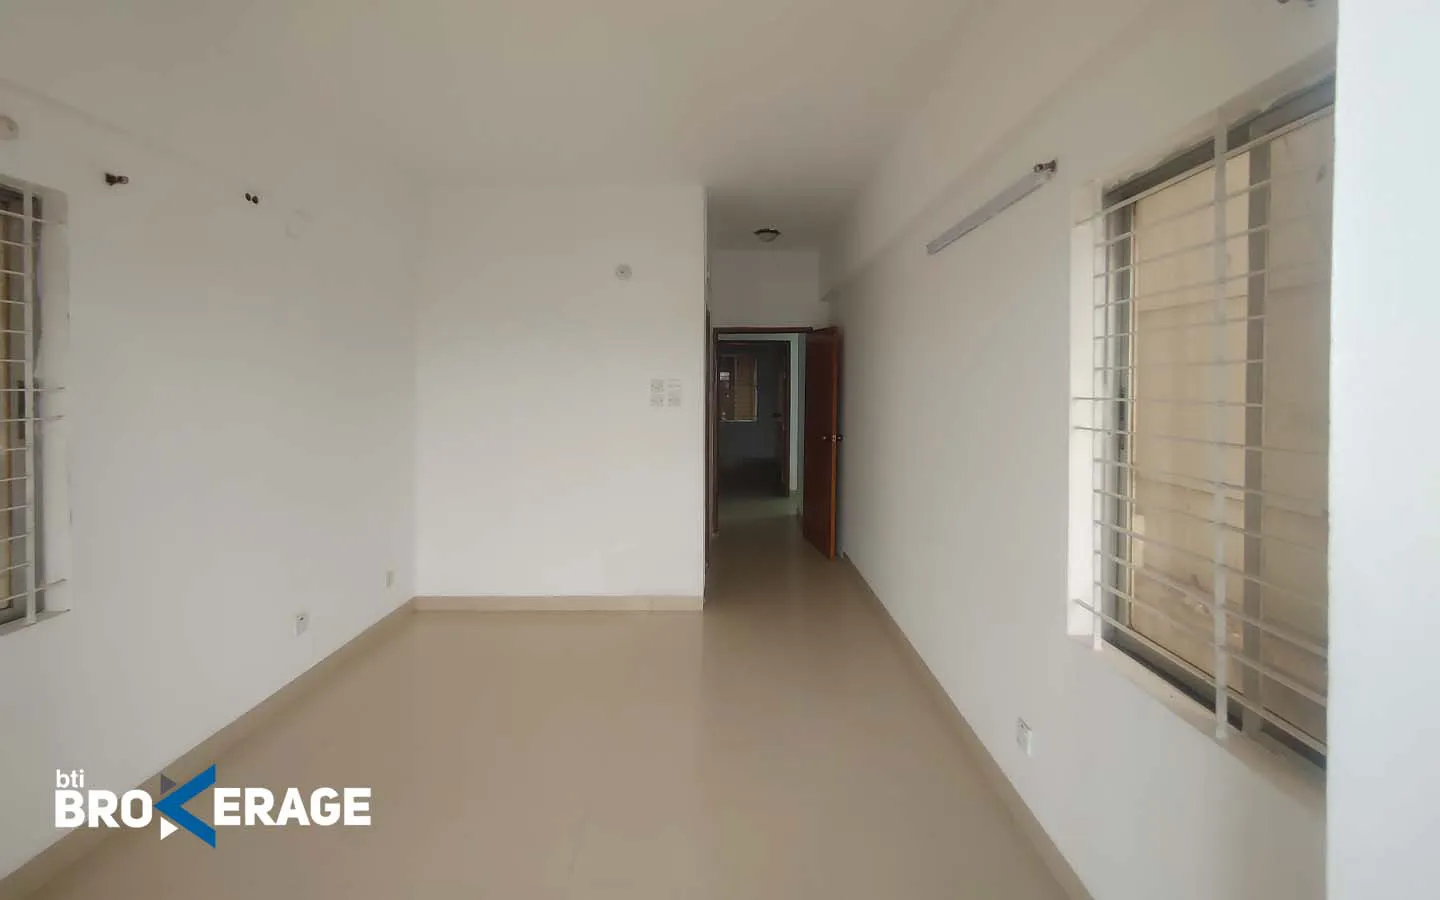 1845 sft 3-bedroom flat is ready for sale in Uttara